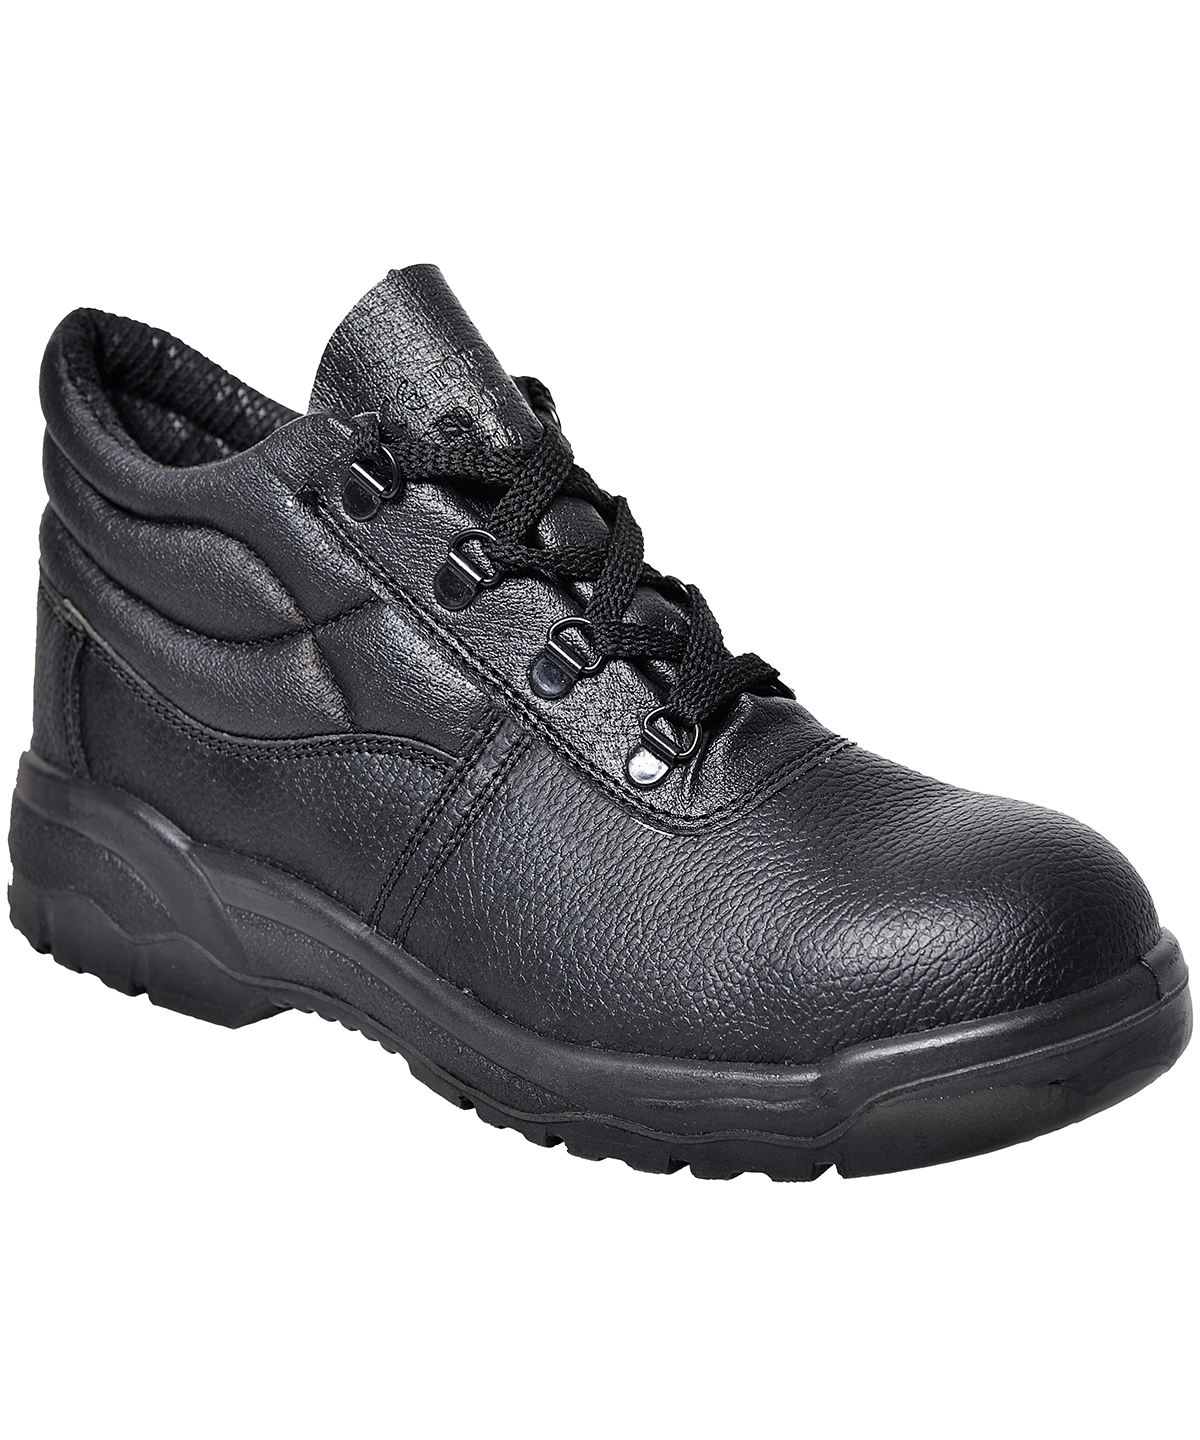 Steelite™ Protector Boot S1P (Fw10) Black Size 10